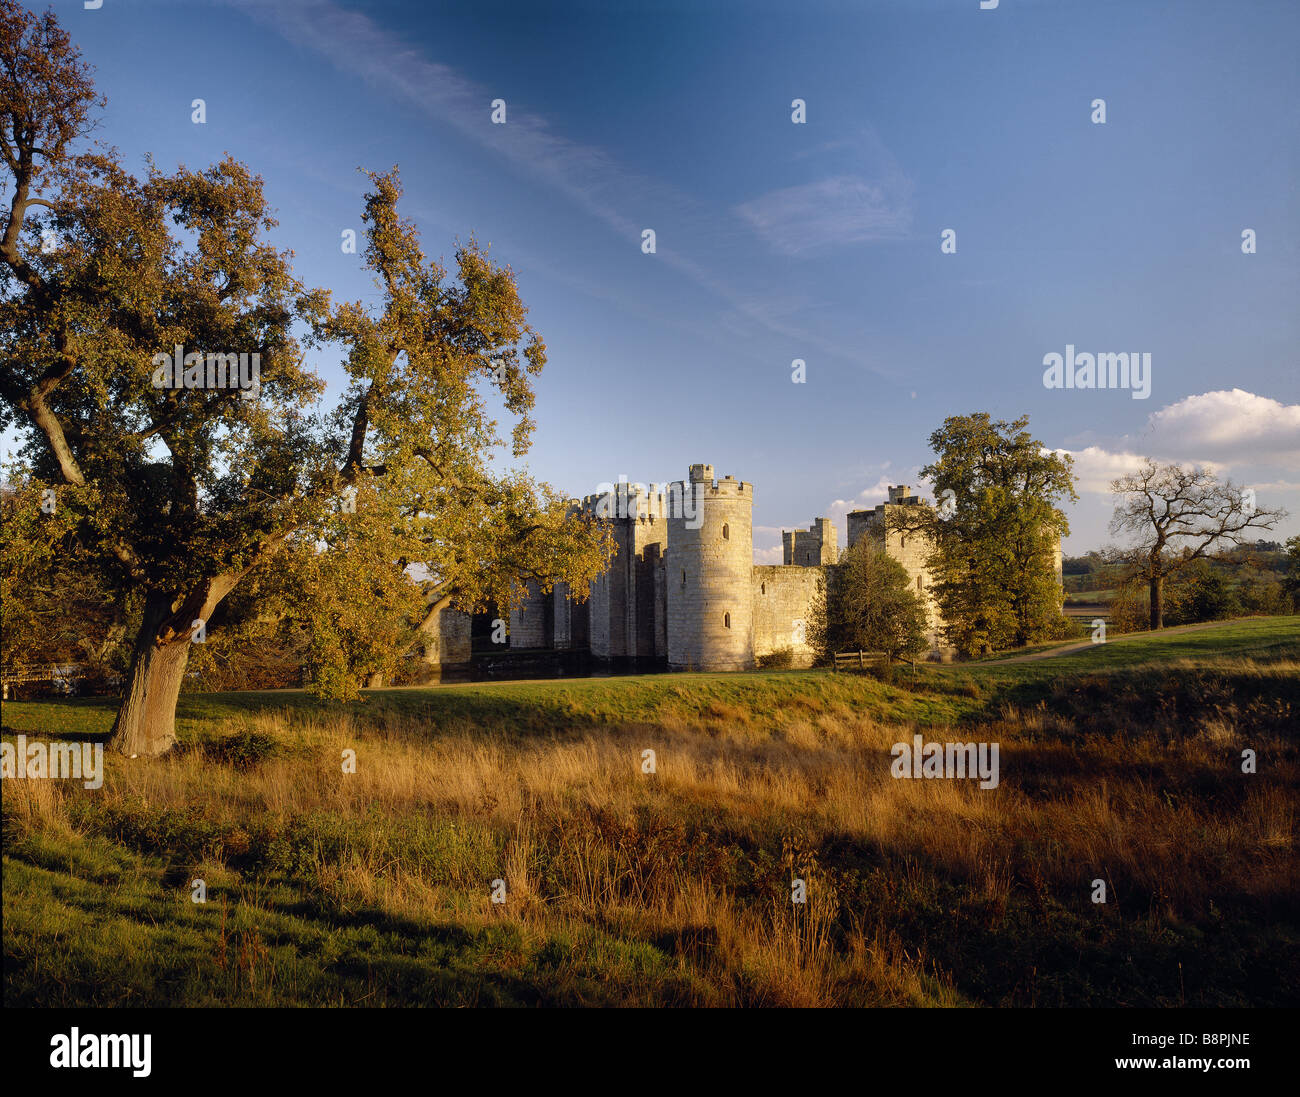 Château de Bodiam vu de l'extérieur à travers les champs en automne chaud light Banque D'Images